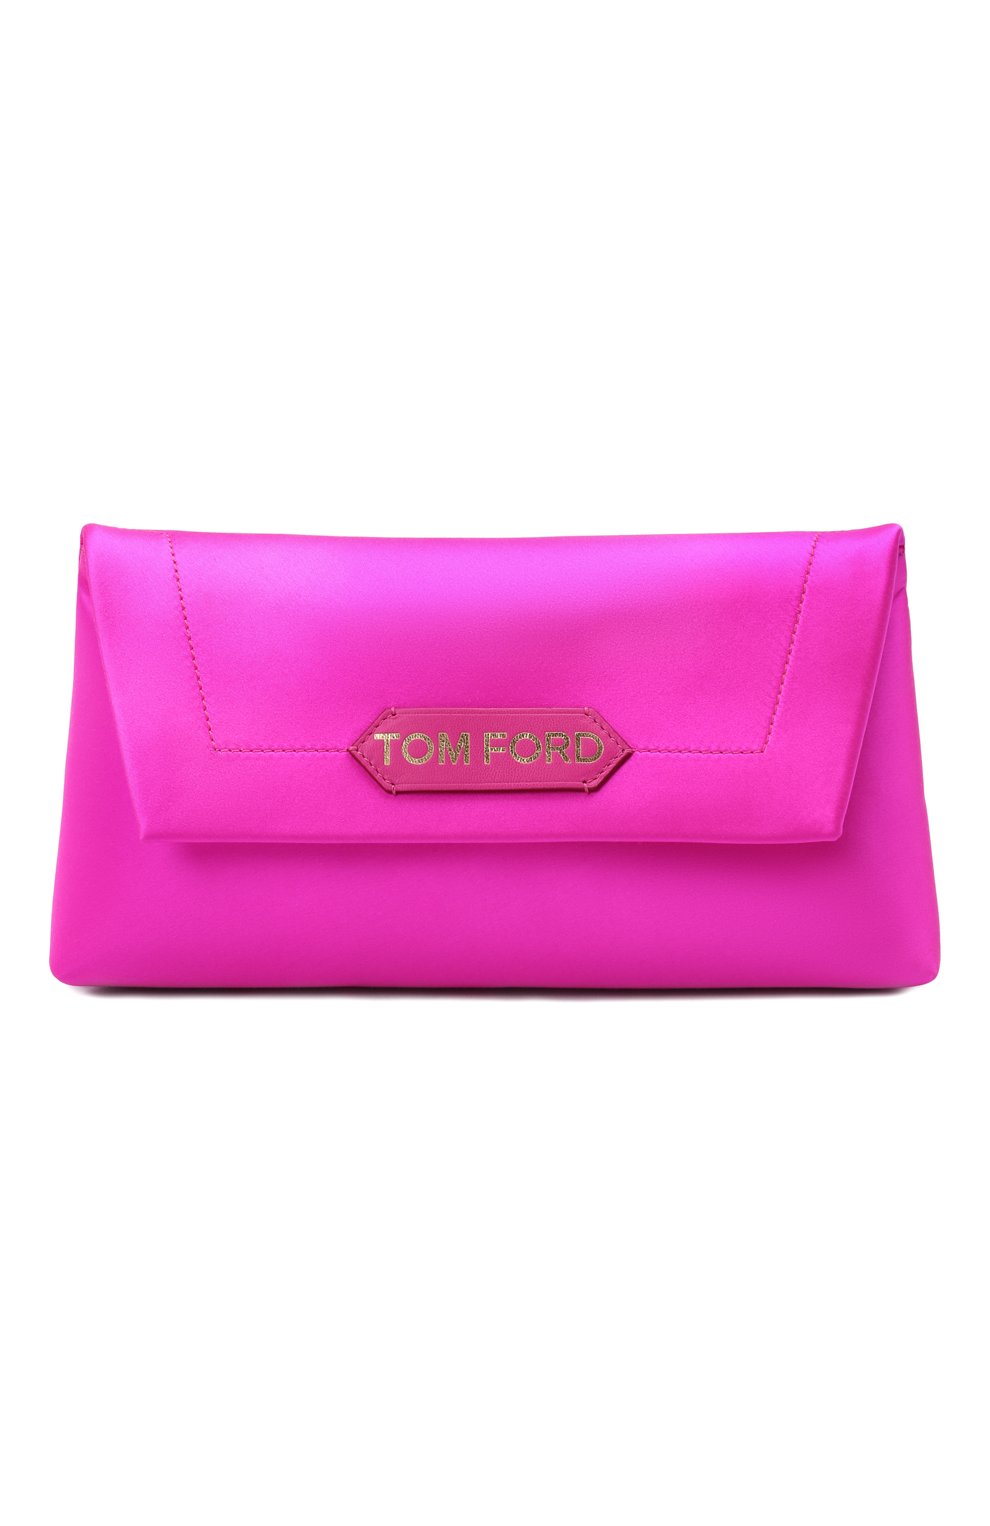 Женская сумка label small TOM FORD фуксия цвета, арт. L1504T-TSA005 | Фото 1 (Сумки-технические: Сумки top-handle; Материал: Текстиль; Размер: small)